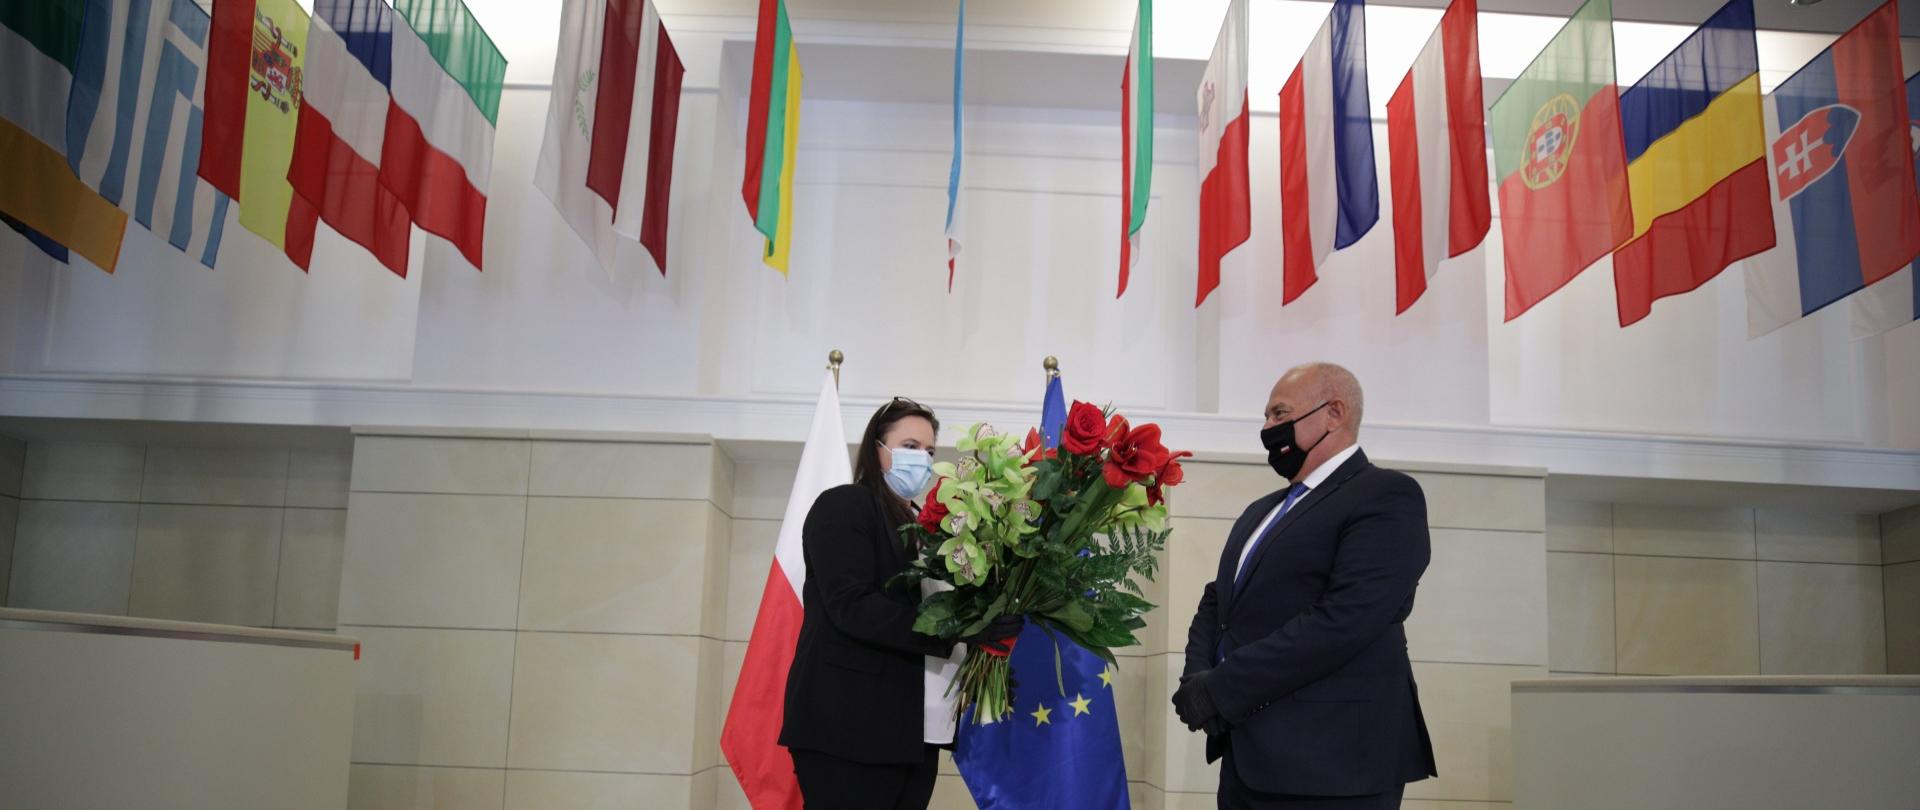 Małgorzata Jarosińska-Jedynak wręcza kwiaty na powitamie ministra Tadeusza Kościńskiego